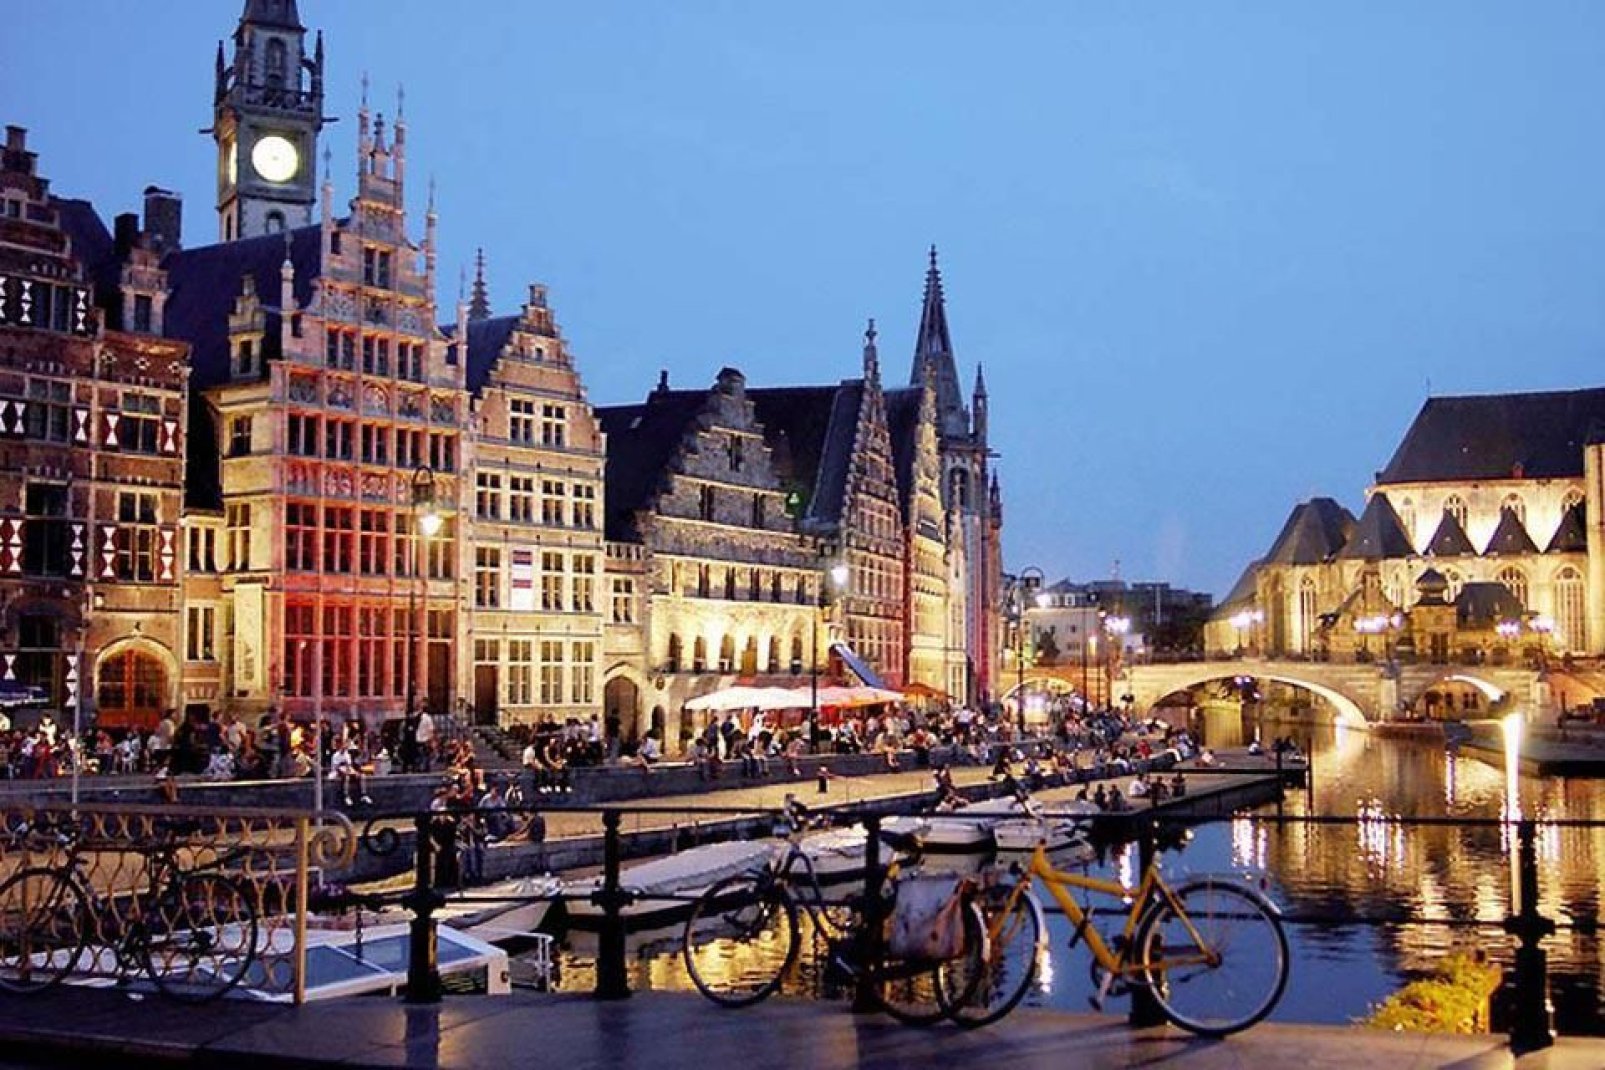 Gent, dessen romantische Kanle und Sehenswrdigkeiten Besucher aus der ganzen Welt anziehen, ist die Geburtstadt von Karl V.